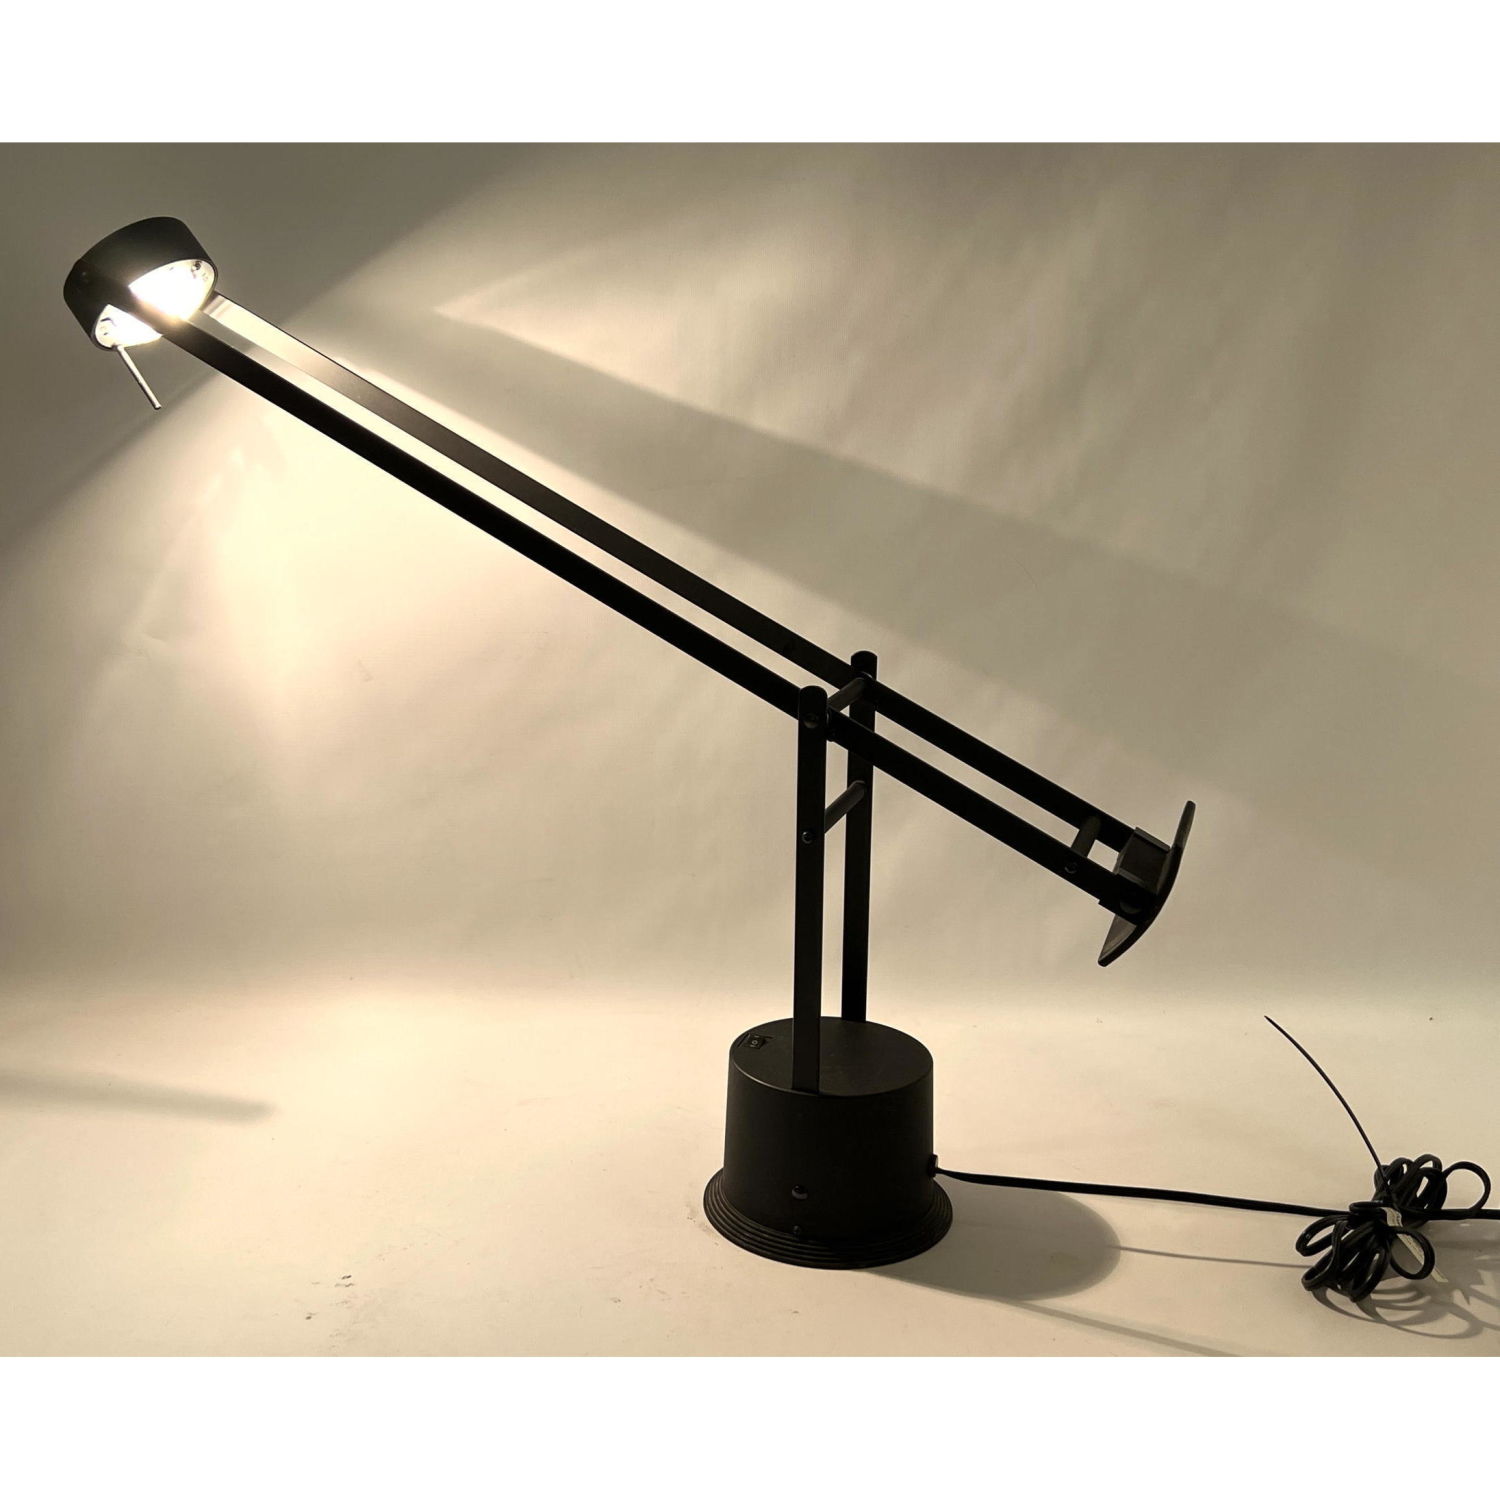 Tizio Style Desk Table Lamp. Counterbalance.